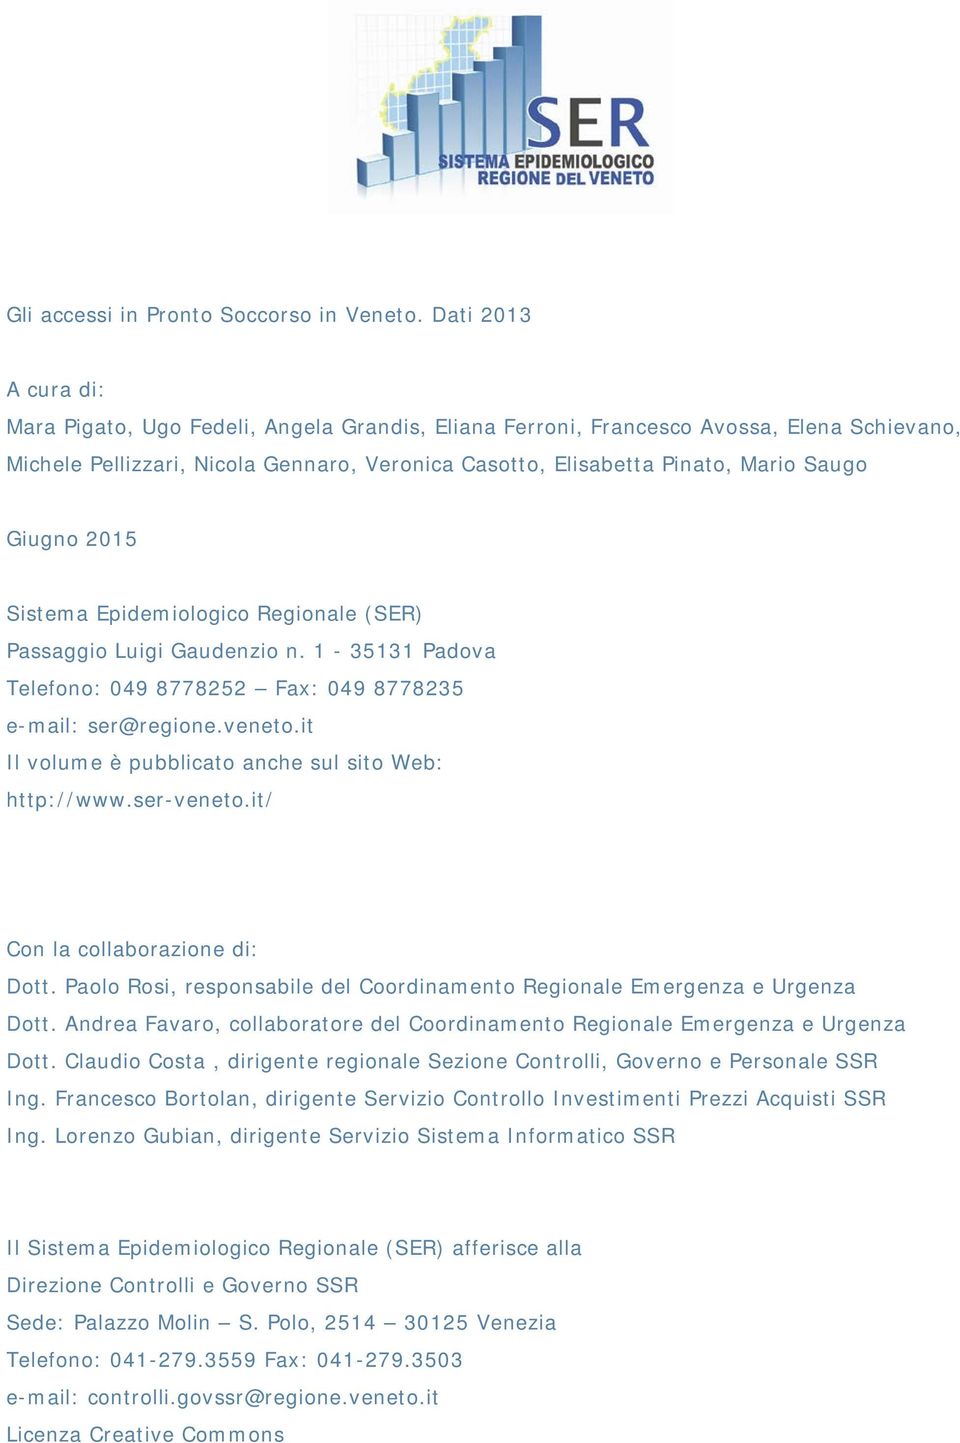 Giugno 2015 (SER) Passaggio Luigi Gaudenzio n. 1-35131 Padova Telefono: 049 8778252 Fax: 049 8778235 e-mail: ser@regione.veneto.it Il volume è pubblicato anche sul sito Web: http://www.ser-veneto.